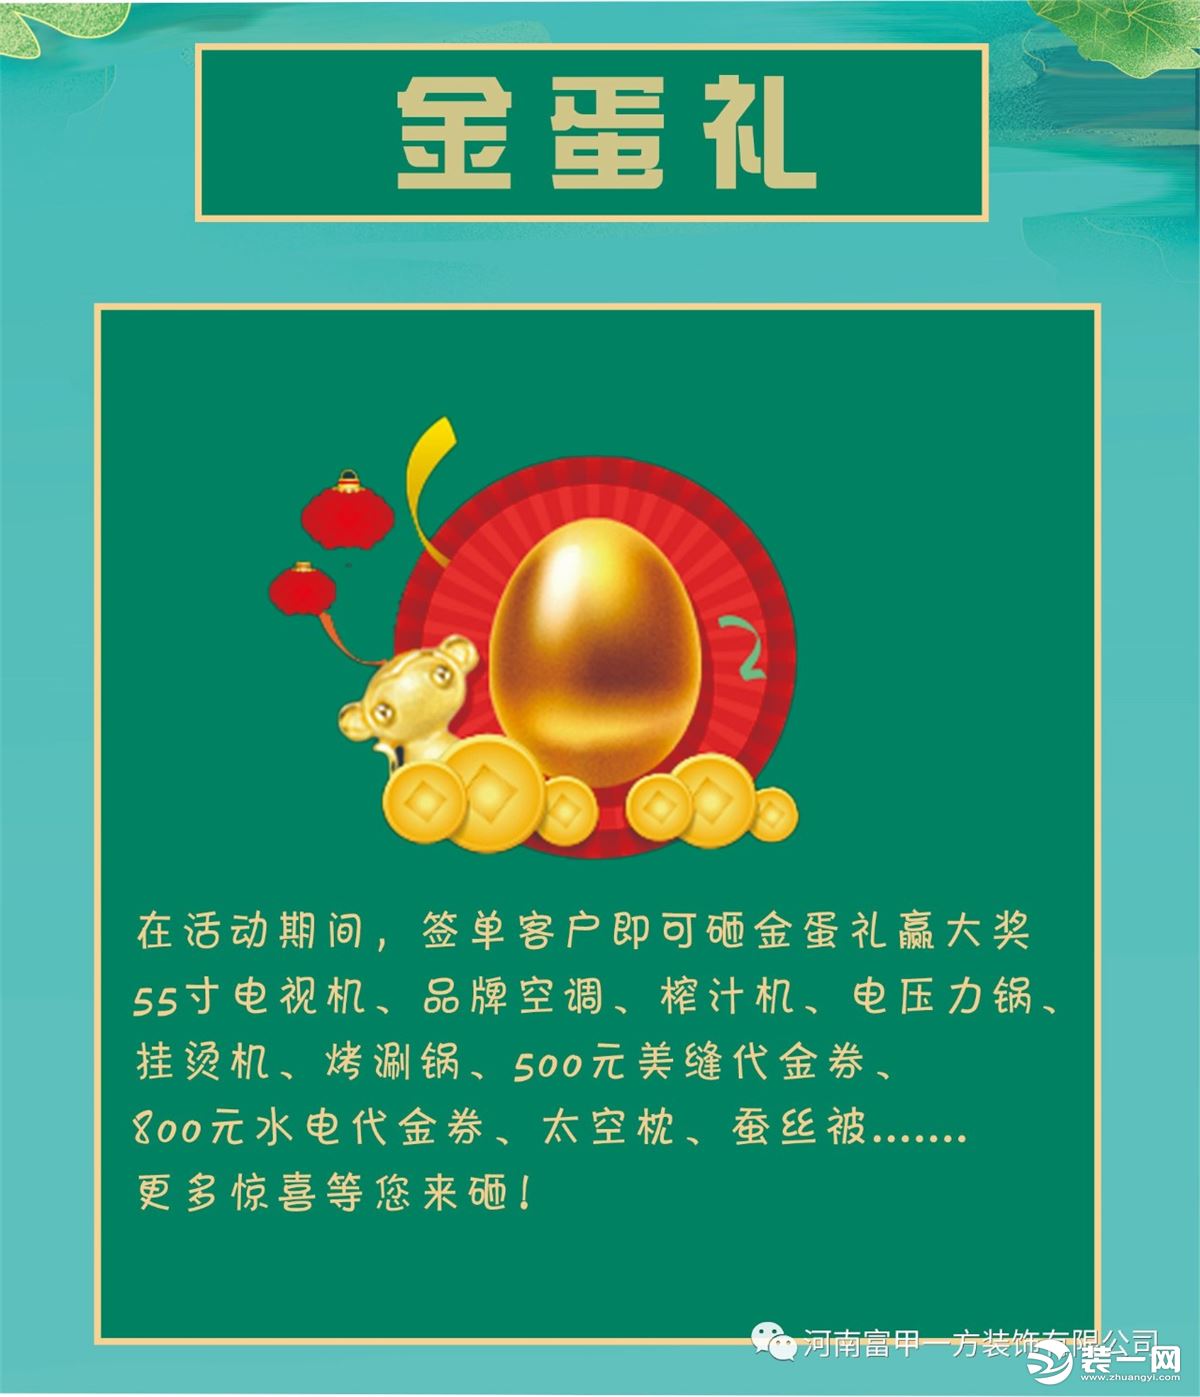 6月25日-27日郑州富甲一方装饰粽横饰海，粽情回馈